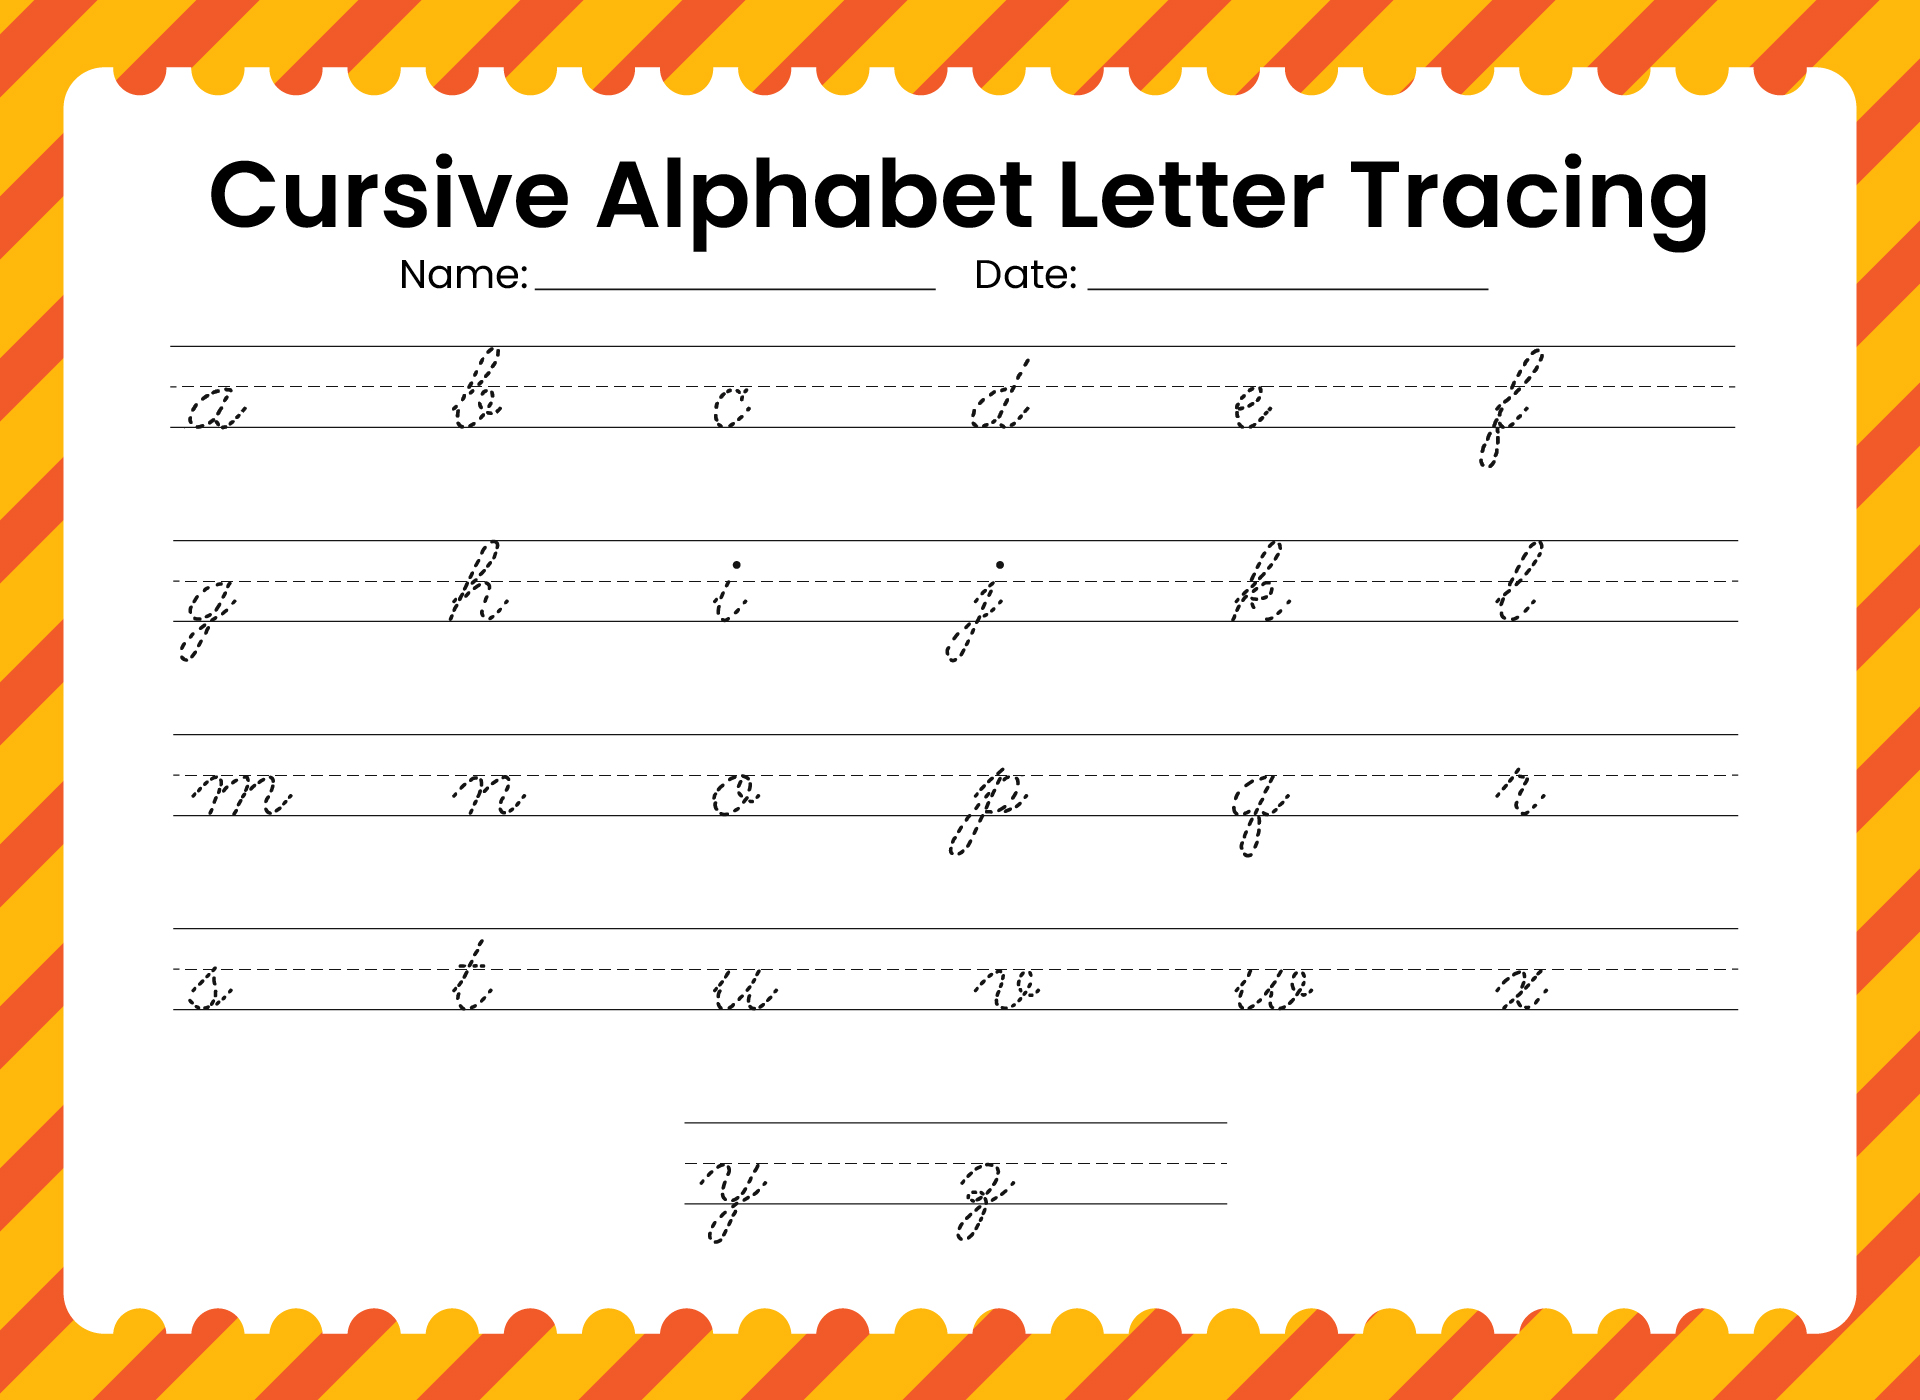 Cursive Alphabet Letter Tracing Worksheet Printables